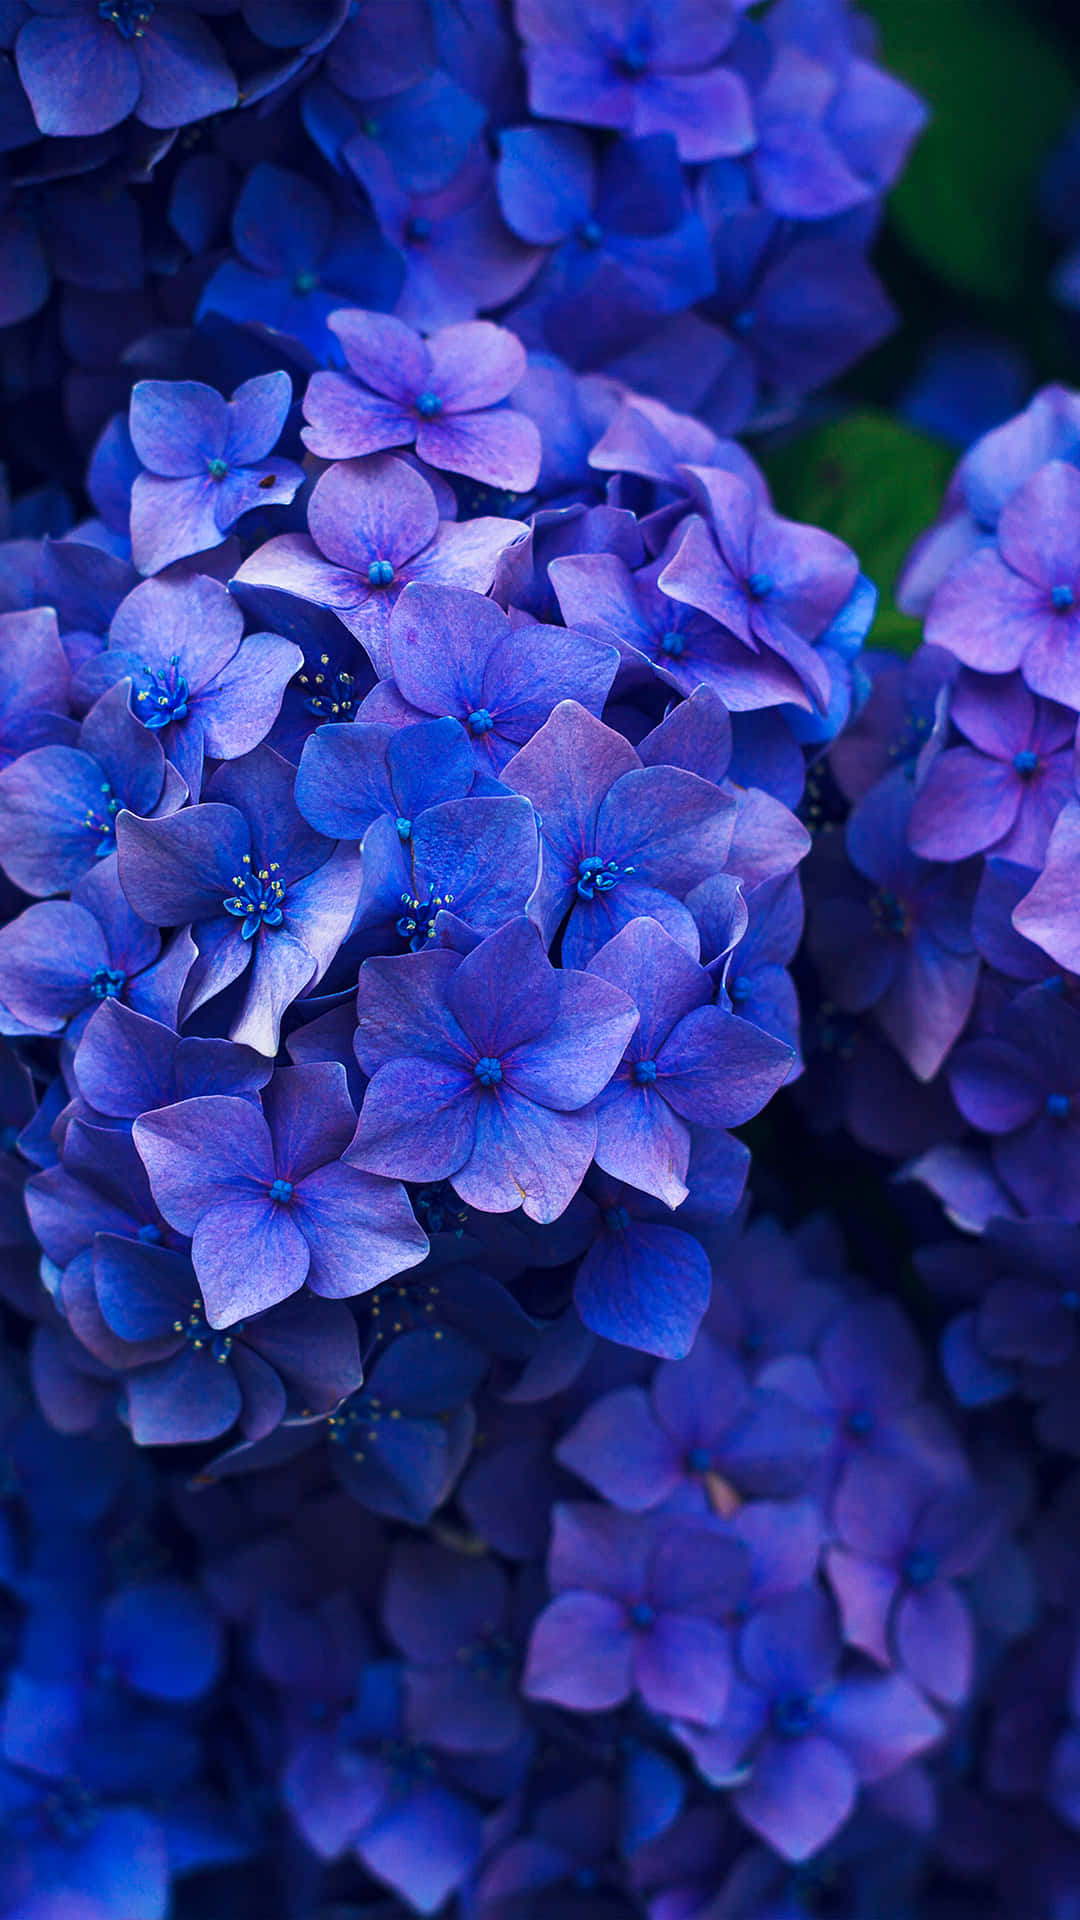 A Vibrant Blue Flower in Full Bloom